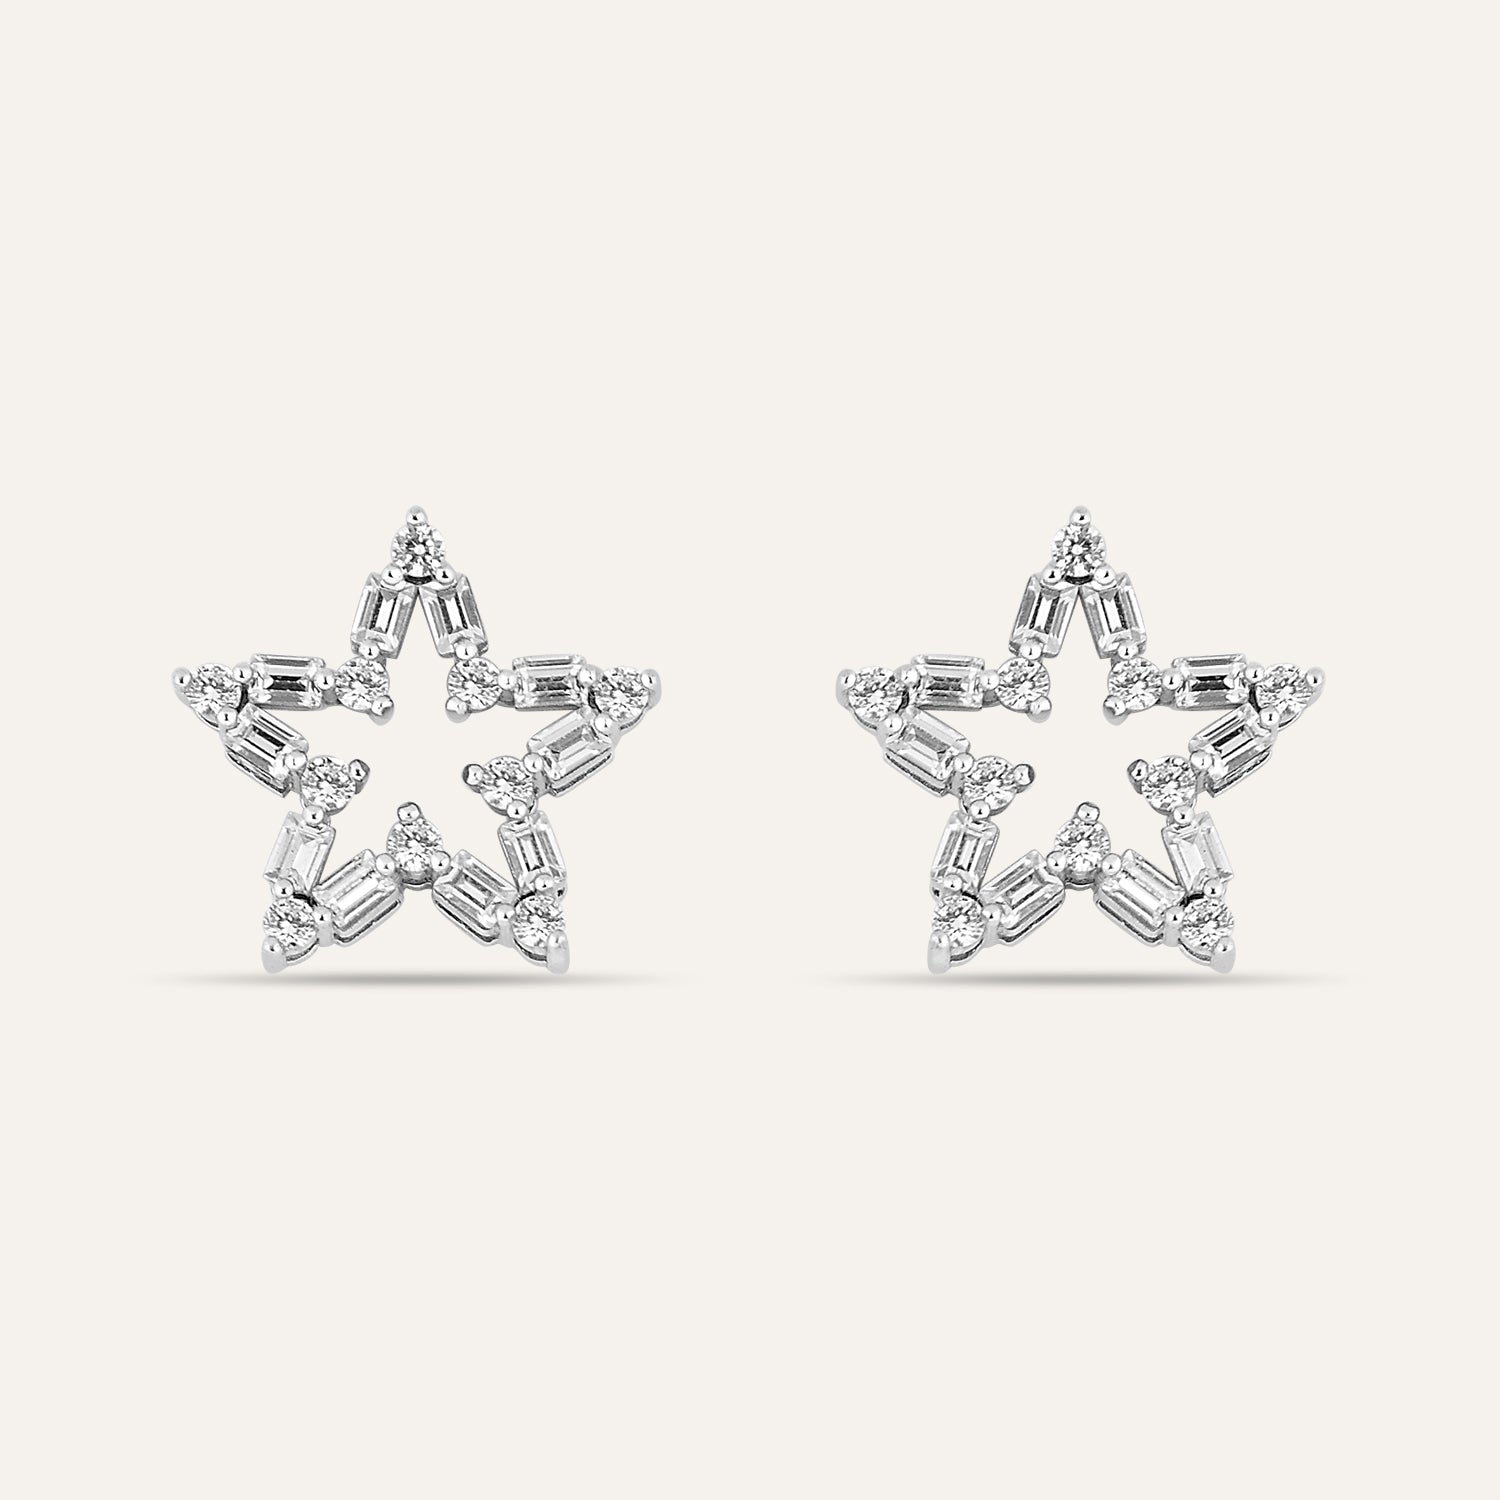 Estrella Sterling Silver Jewelry Earrings